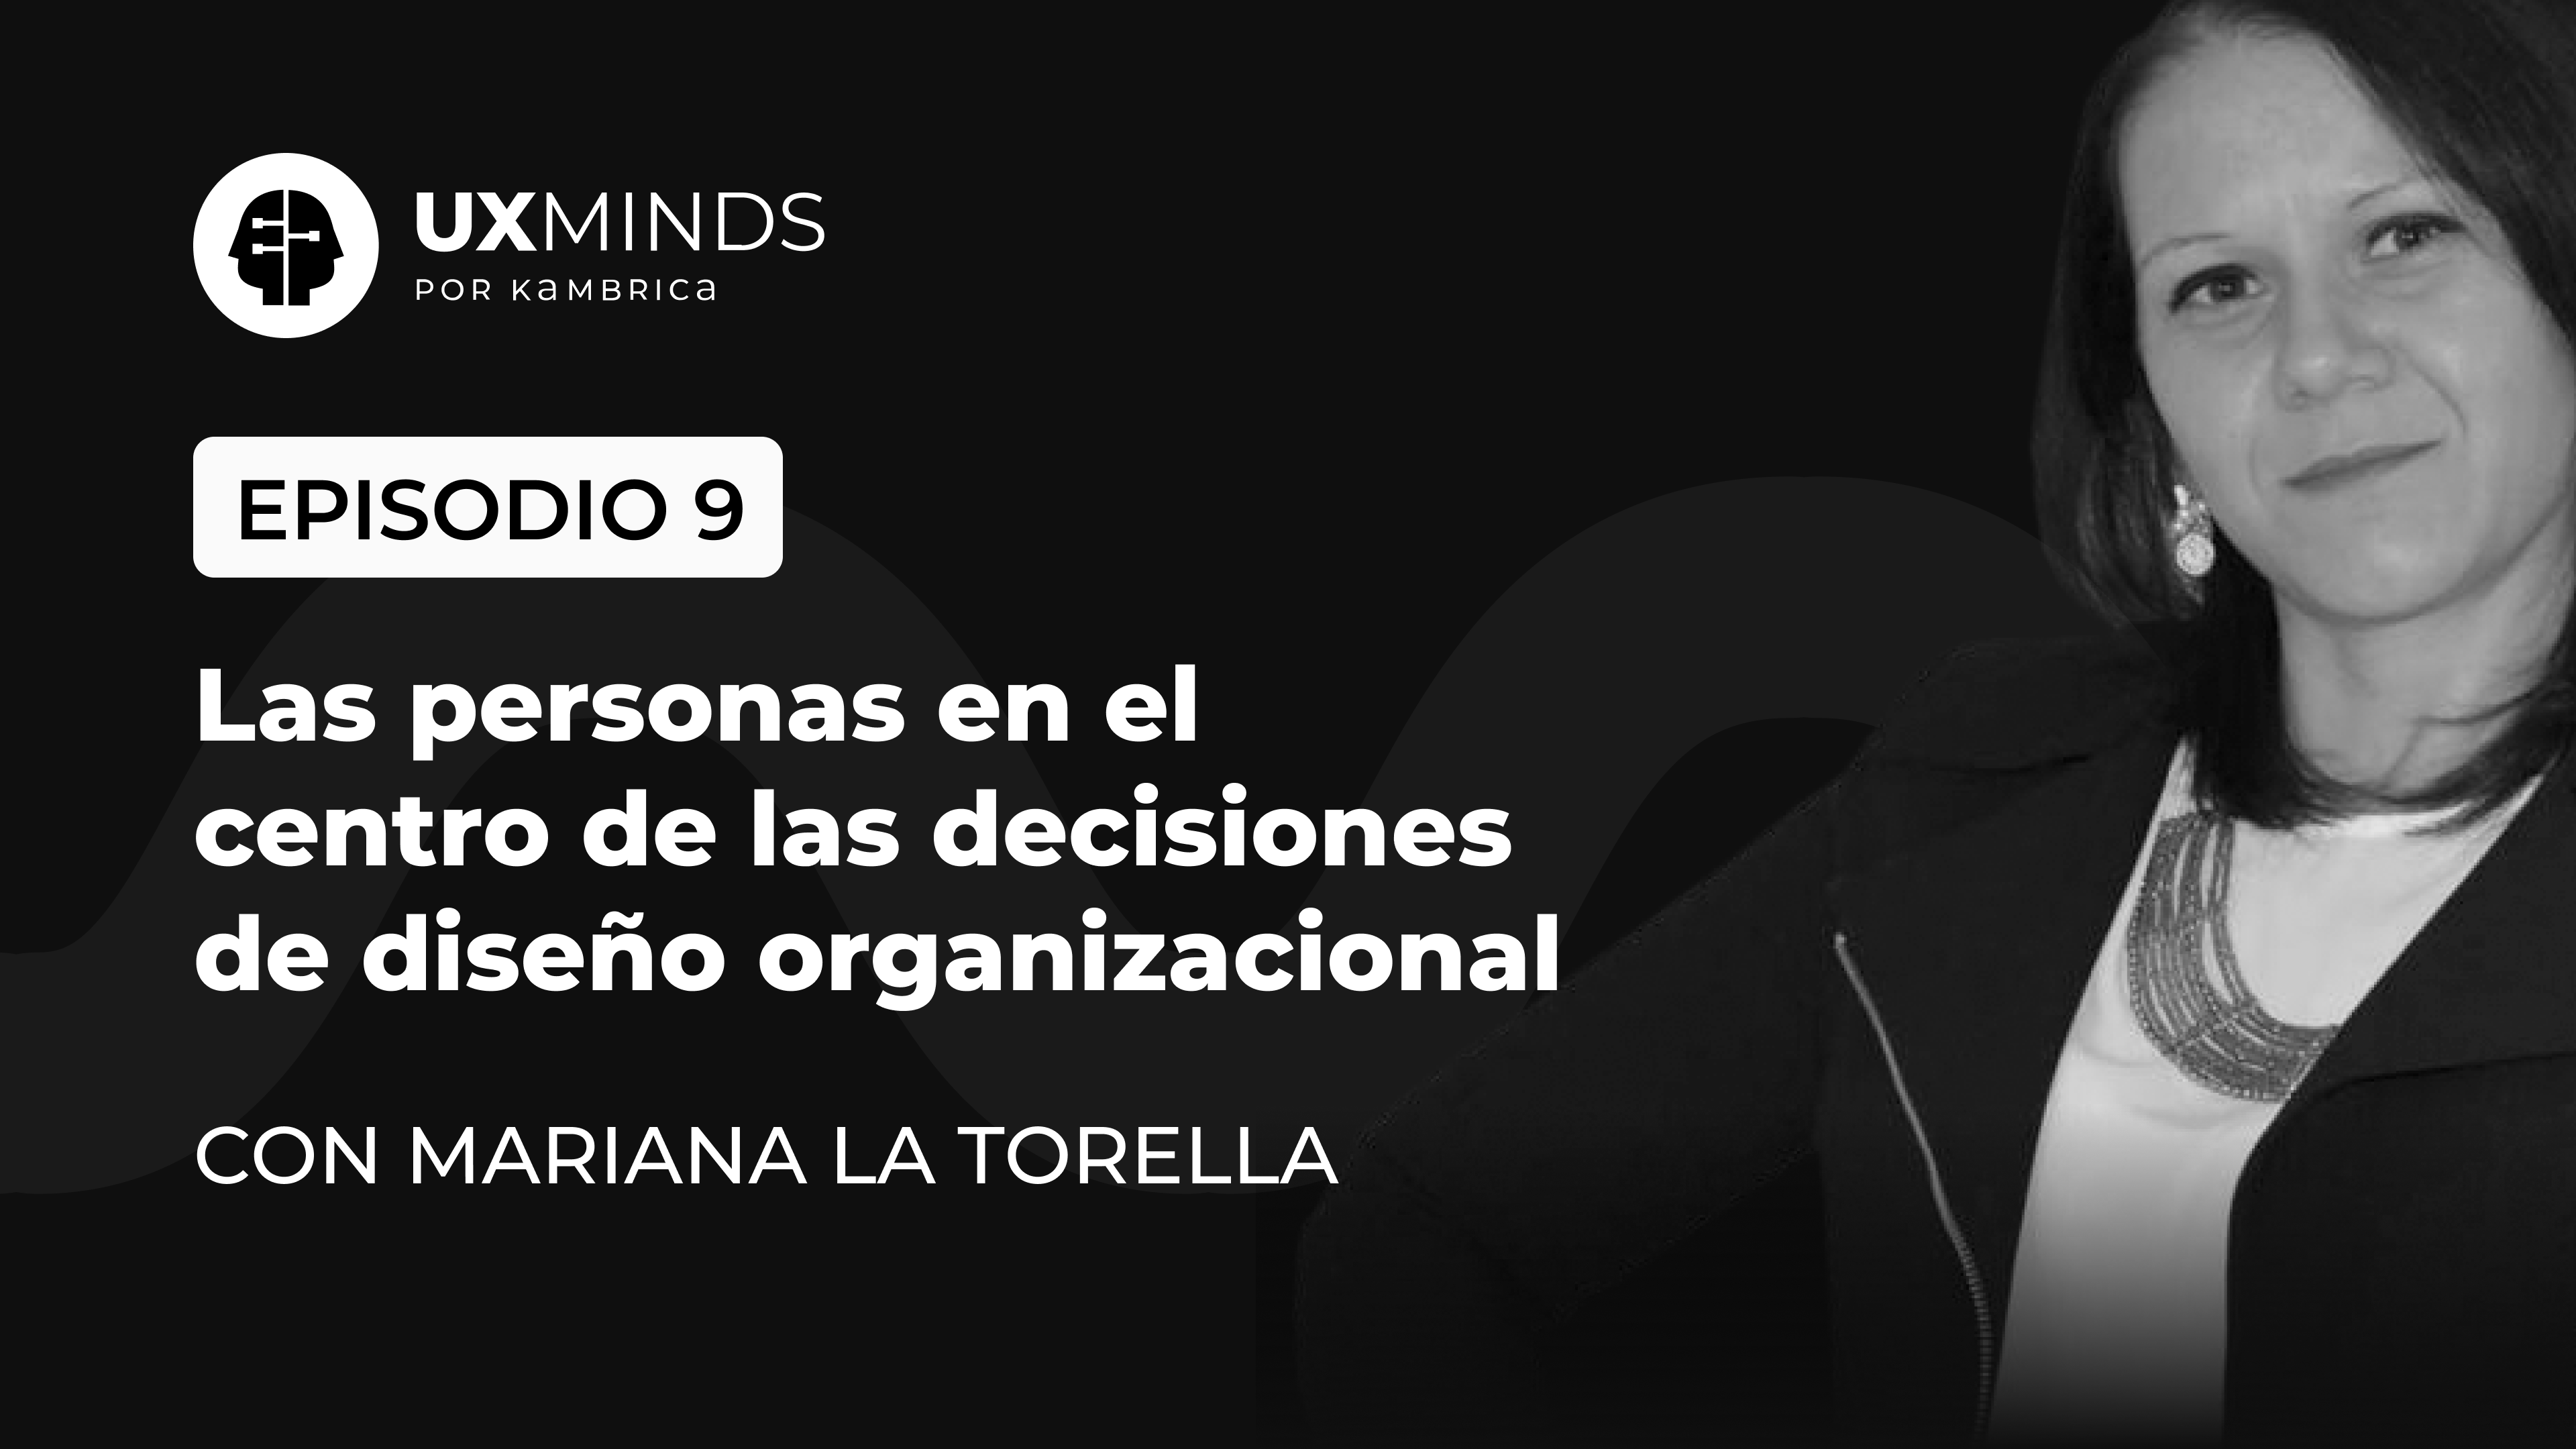 Episodio 9. Las personas en el centro de las decisiones de diseño organizacionales. Con Mariana La Torella